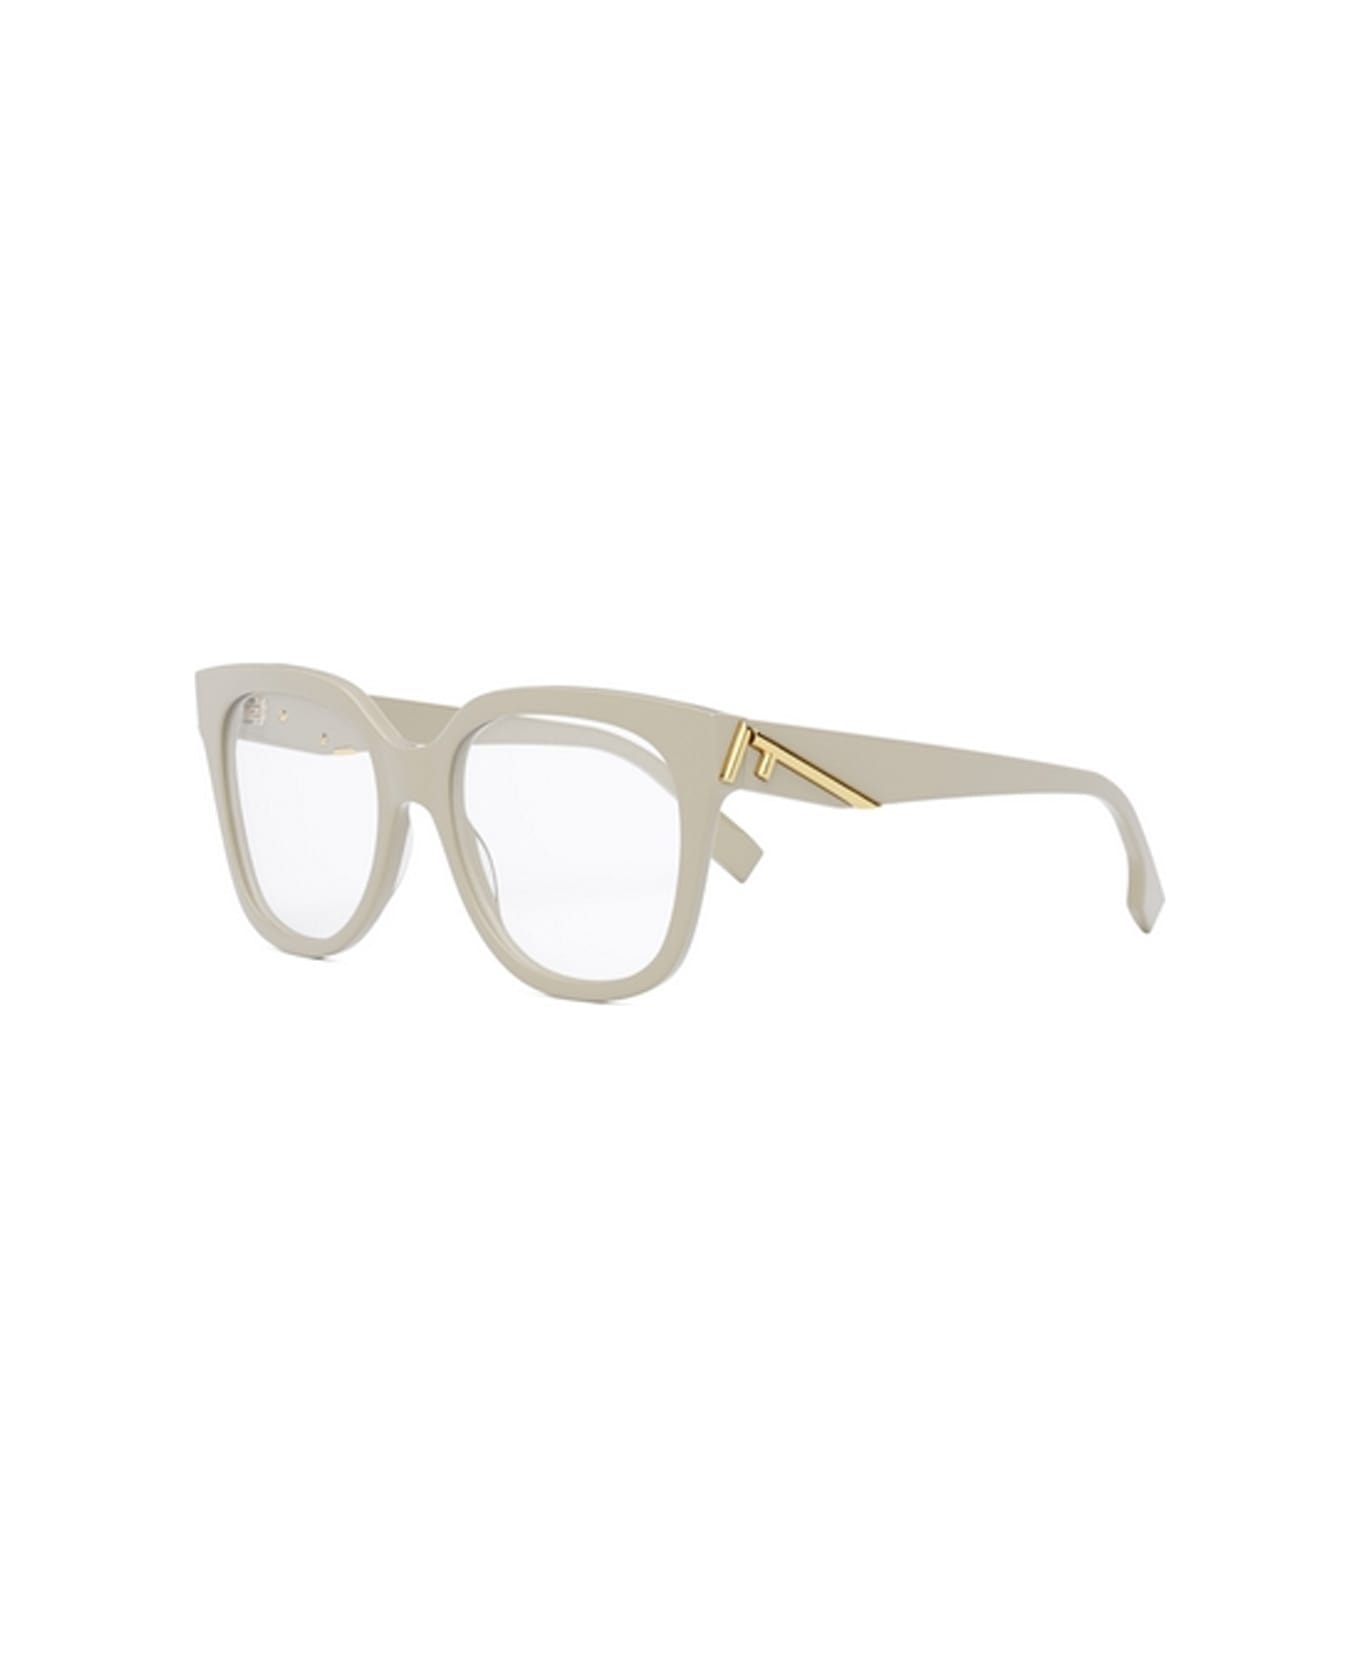 Fendi Eyewear Fe50064i 025 Glasses - Avorio